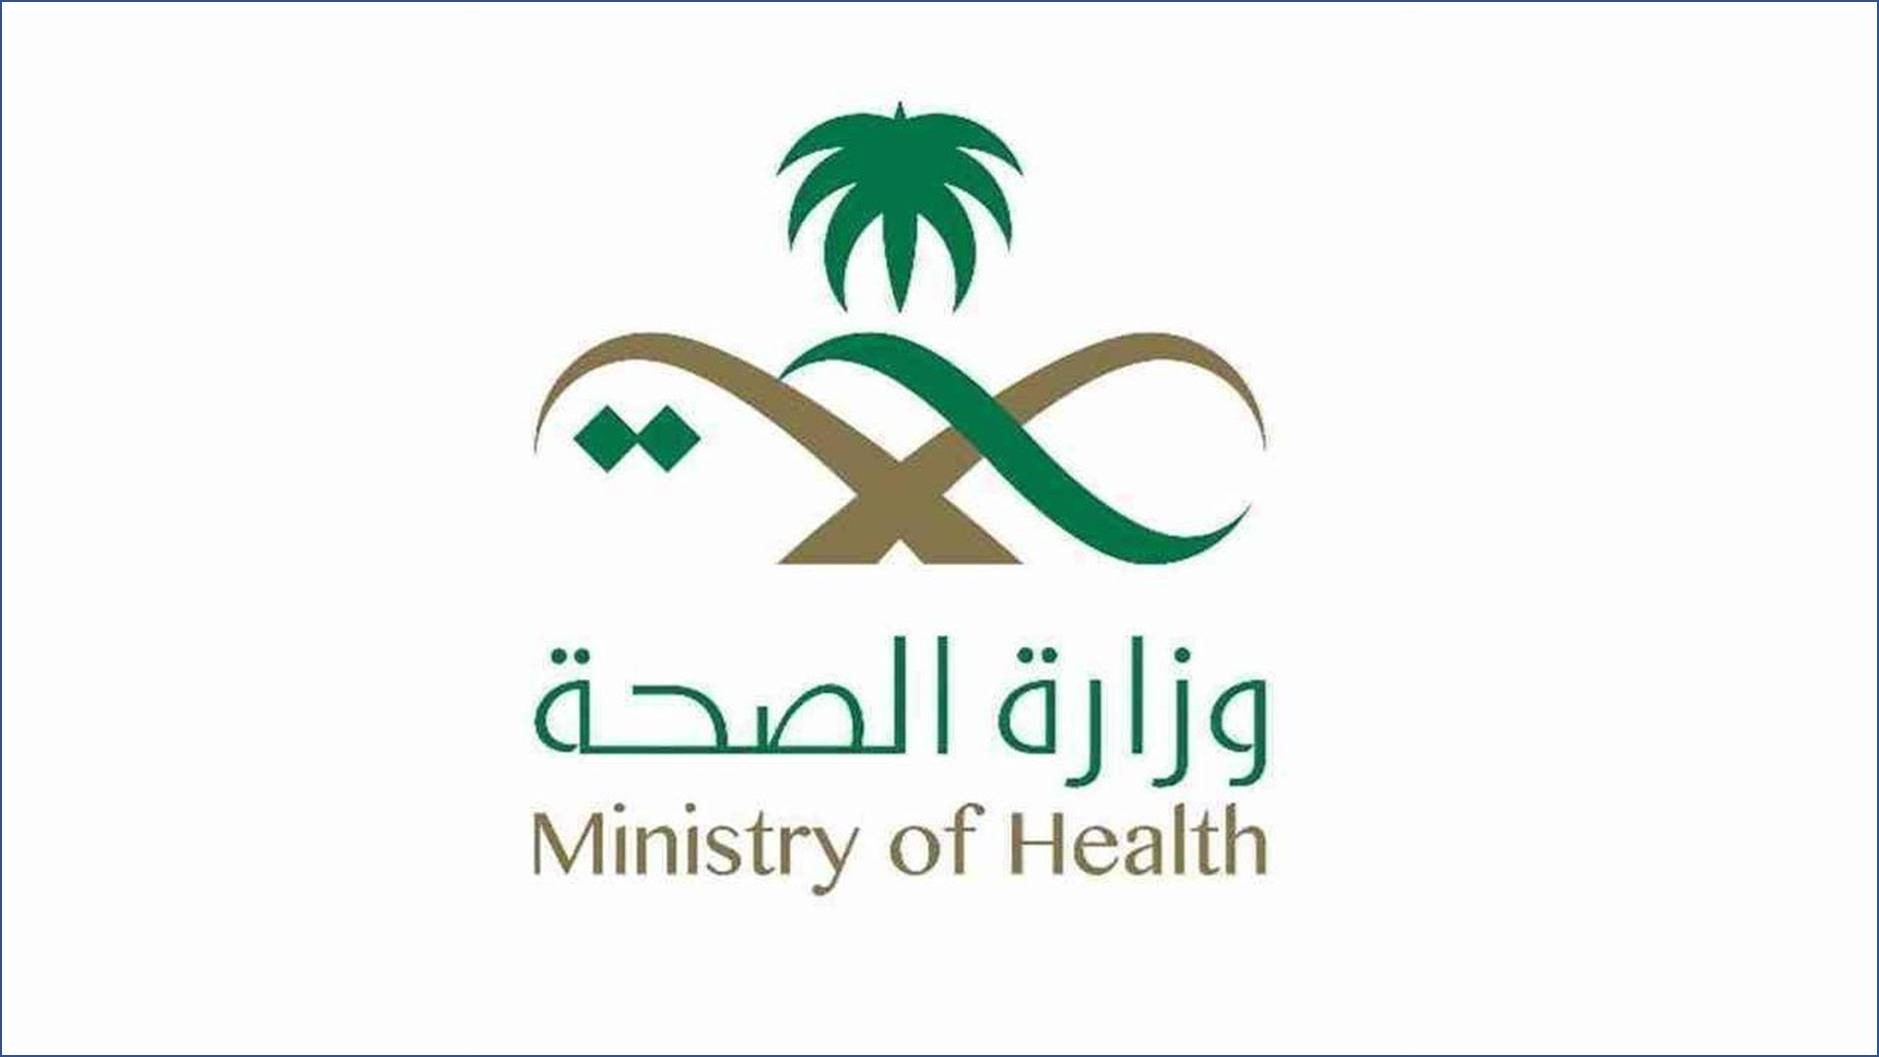 وزارة الصحة عبر برنامج التدريب تمهير - 15000 وظيفة